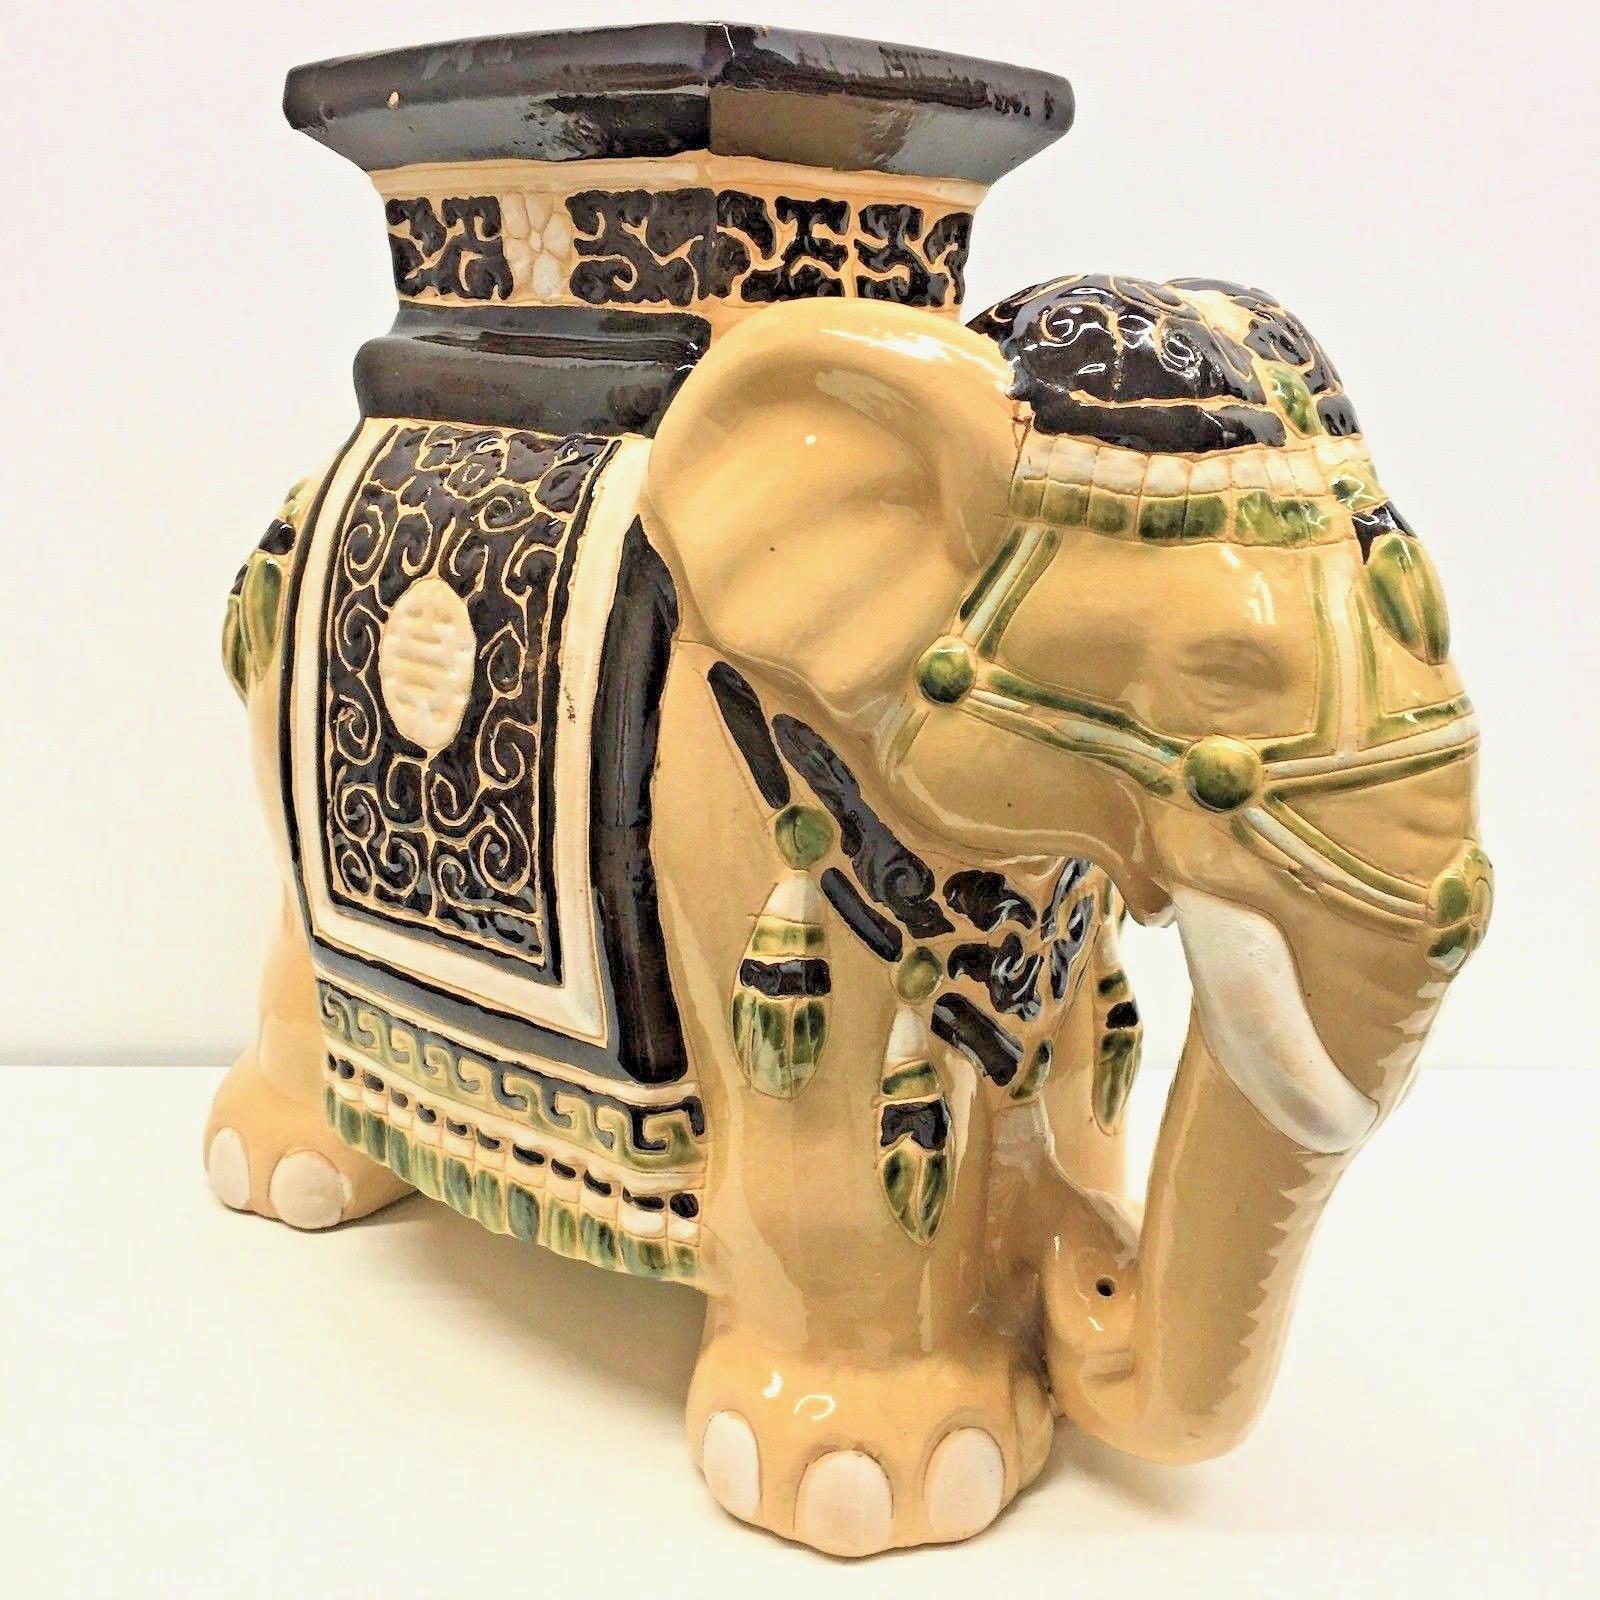 Mitte des 20. Jahrhunderts glasierter Keramik-Elefanten-Gartenhocker, Blumentopfsitz oder Beistelltisch. Handgefertigt aus Keramik. Eine schöne Ergänzung für Ihr Haus, Ihre Terrasse oder Ihren Garten.
    